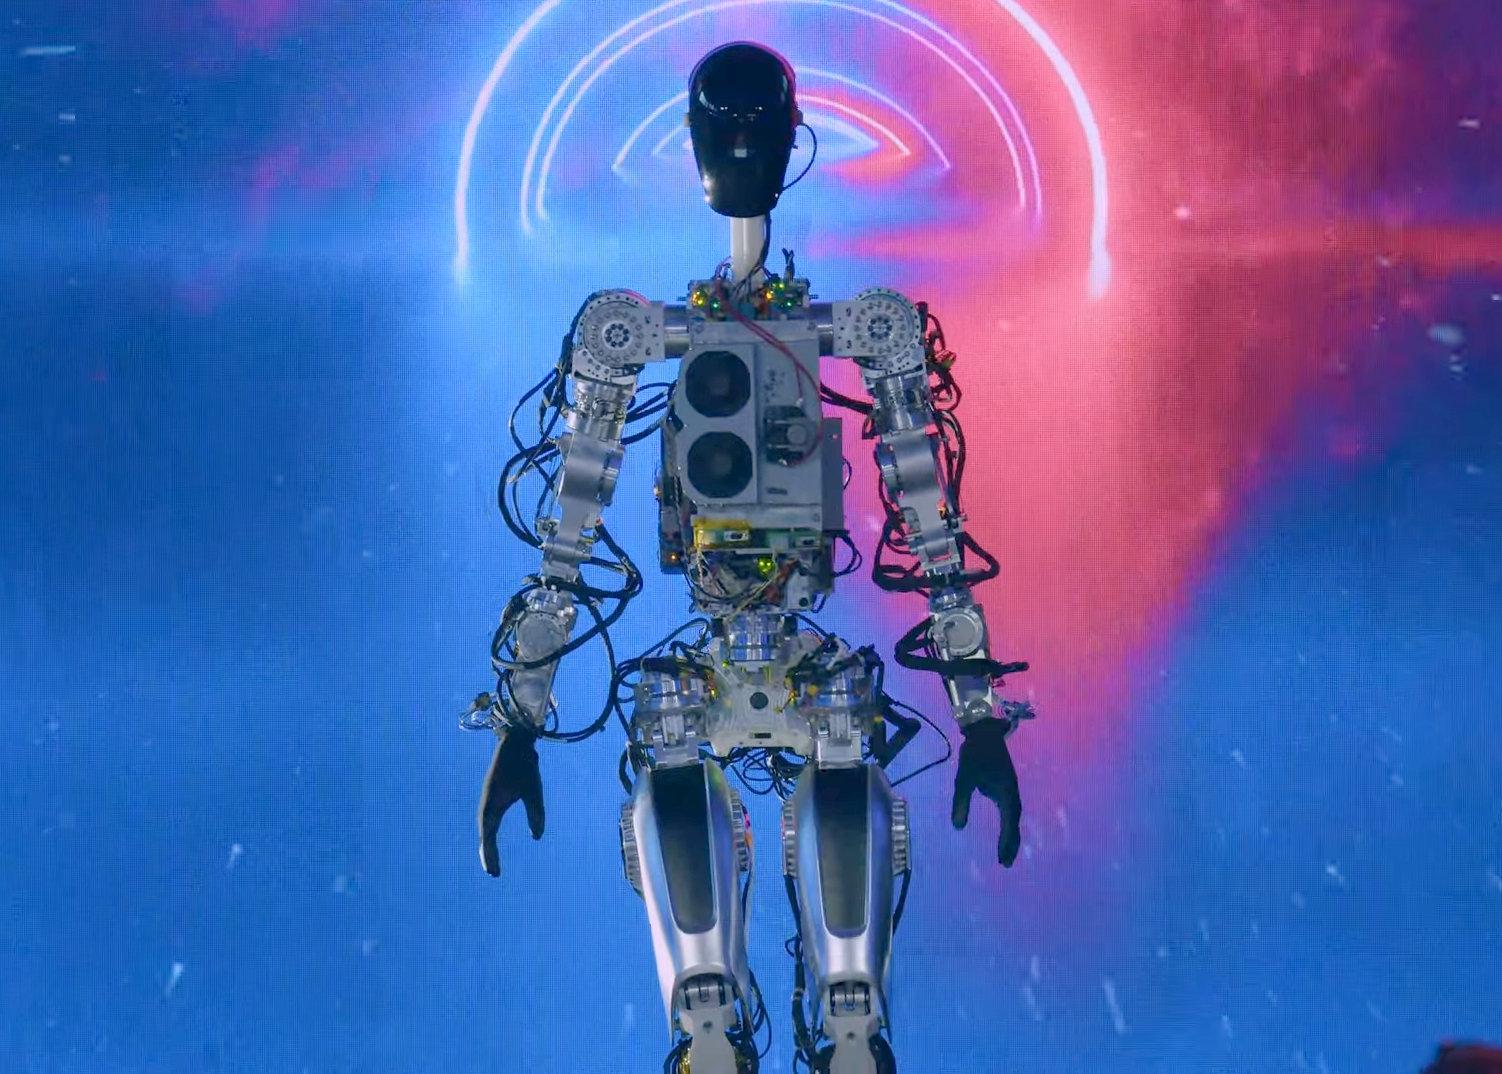 Figure Unveils Its Humanoid Robot Prototype - IEEE Spectrum